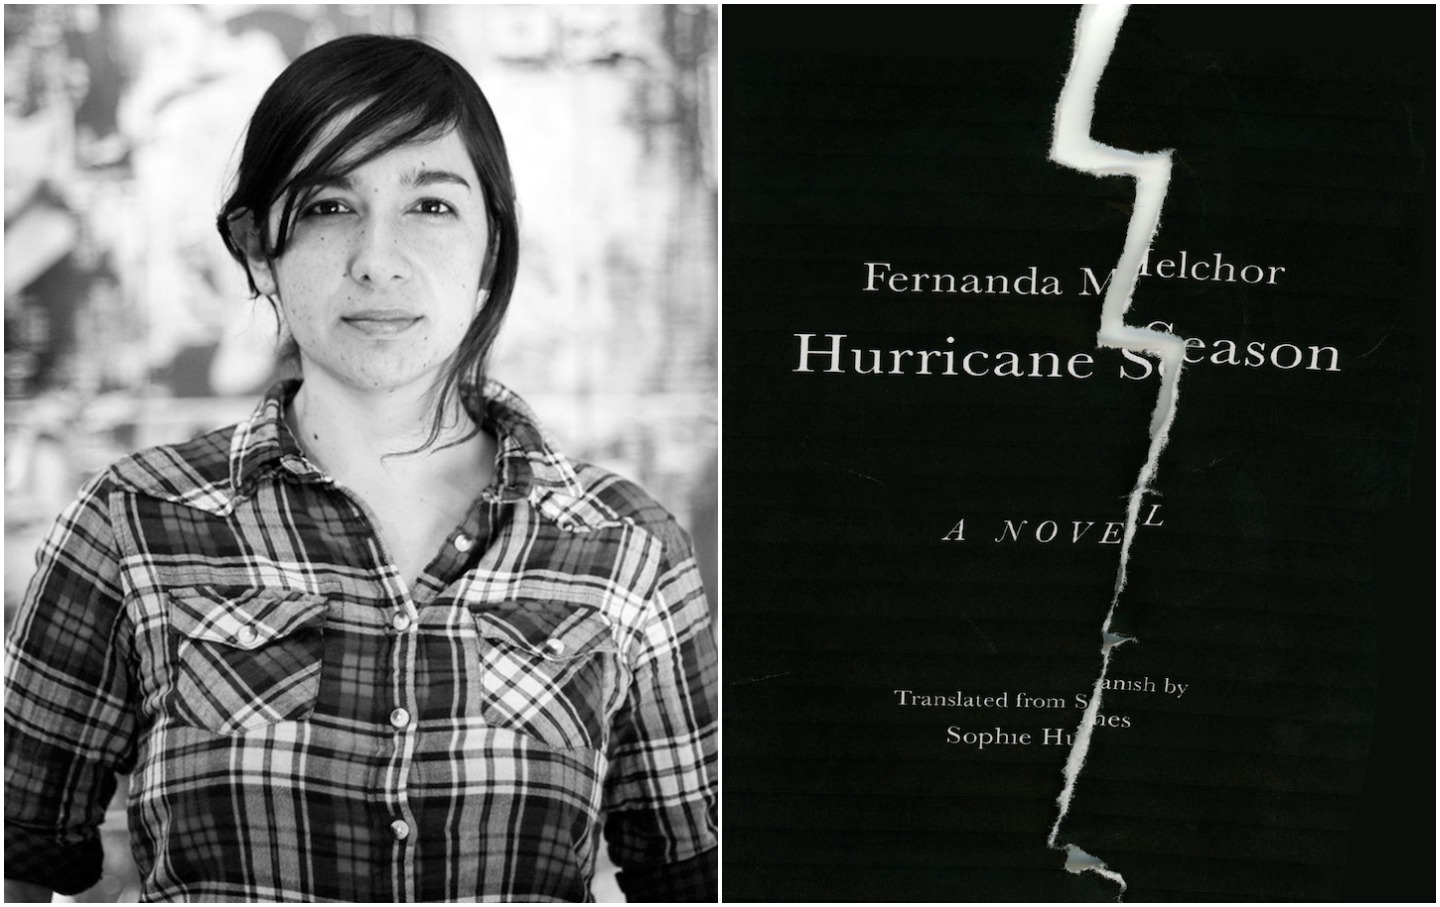 Not Catharsis but Vengeance: The Startling Fiction of Fernanda Melchor